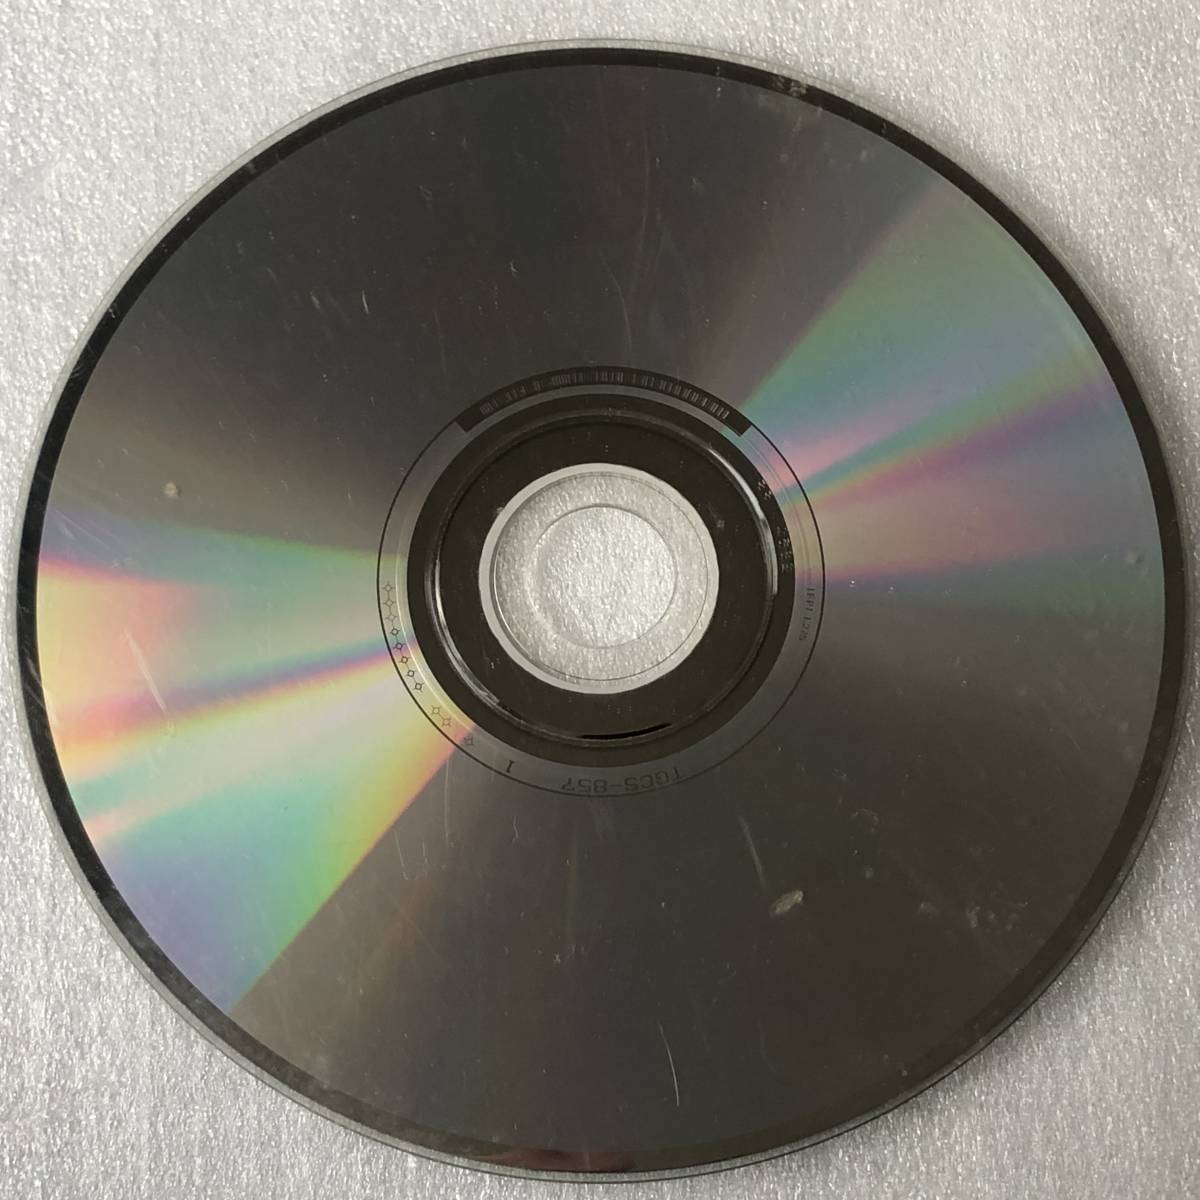 特価CD 管理番号0470_このような傷だらけの品は除外しています。